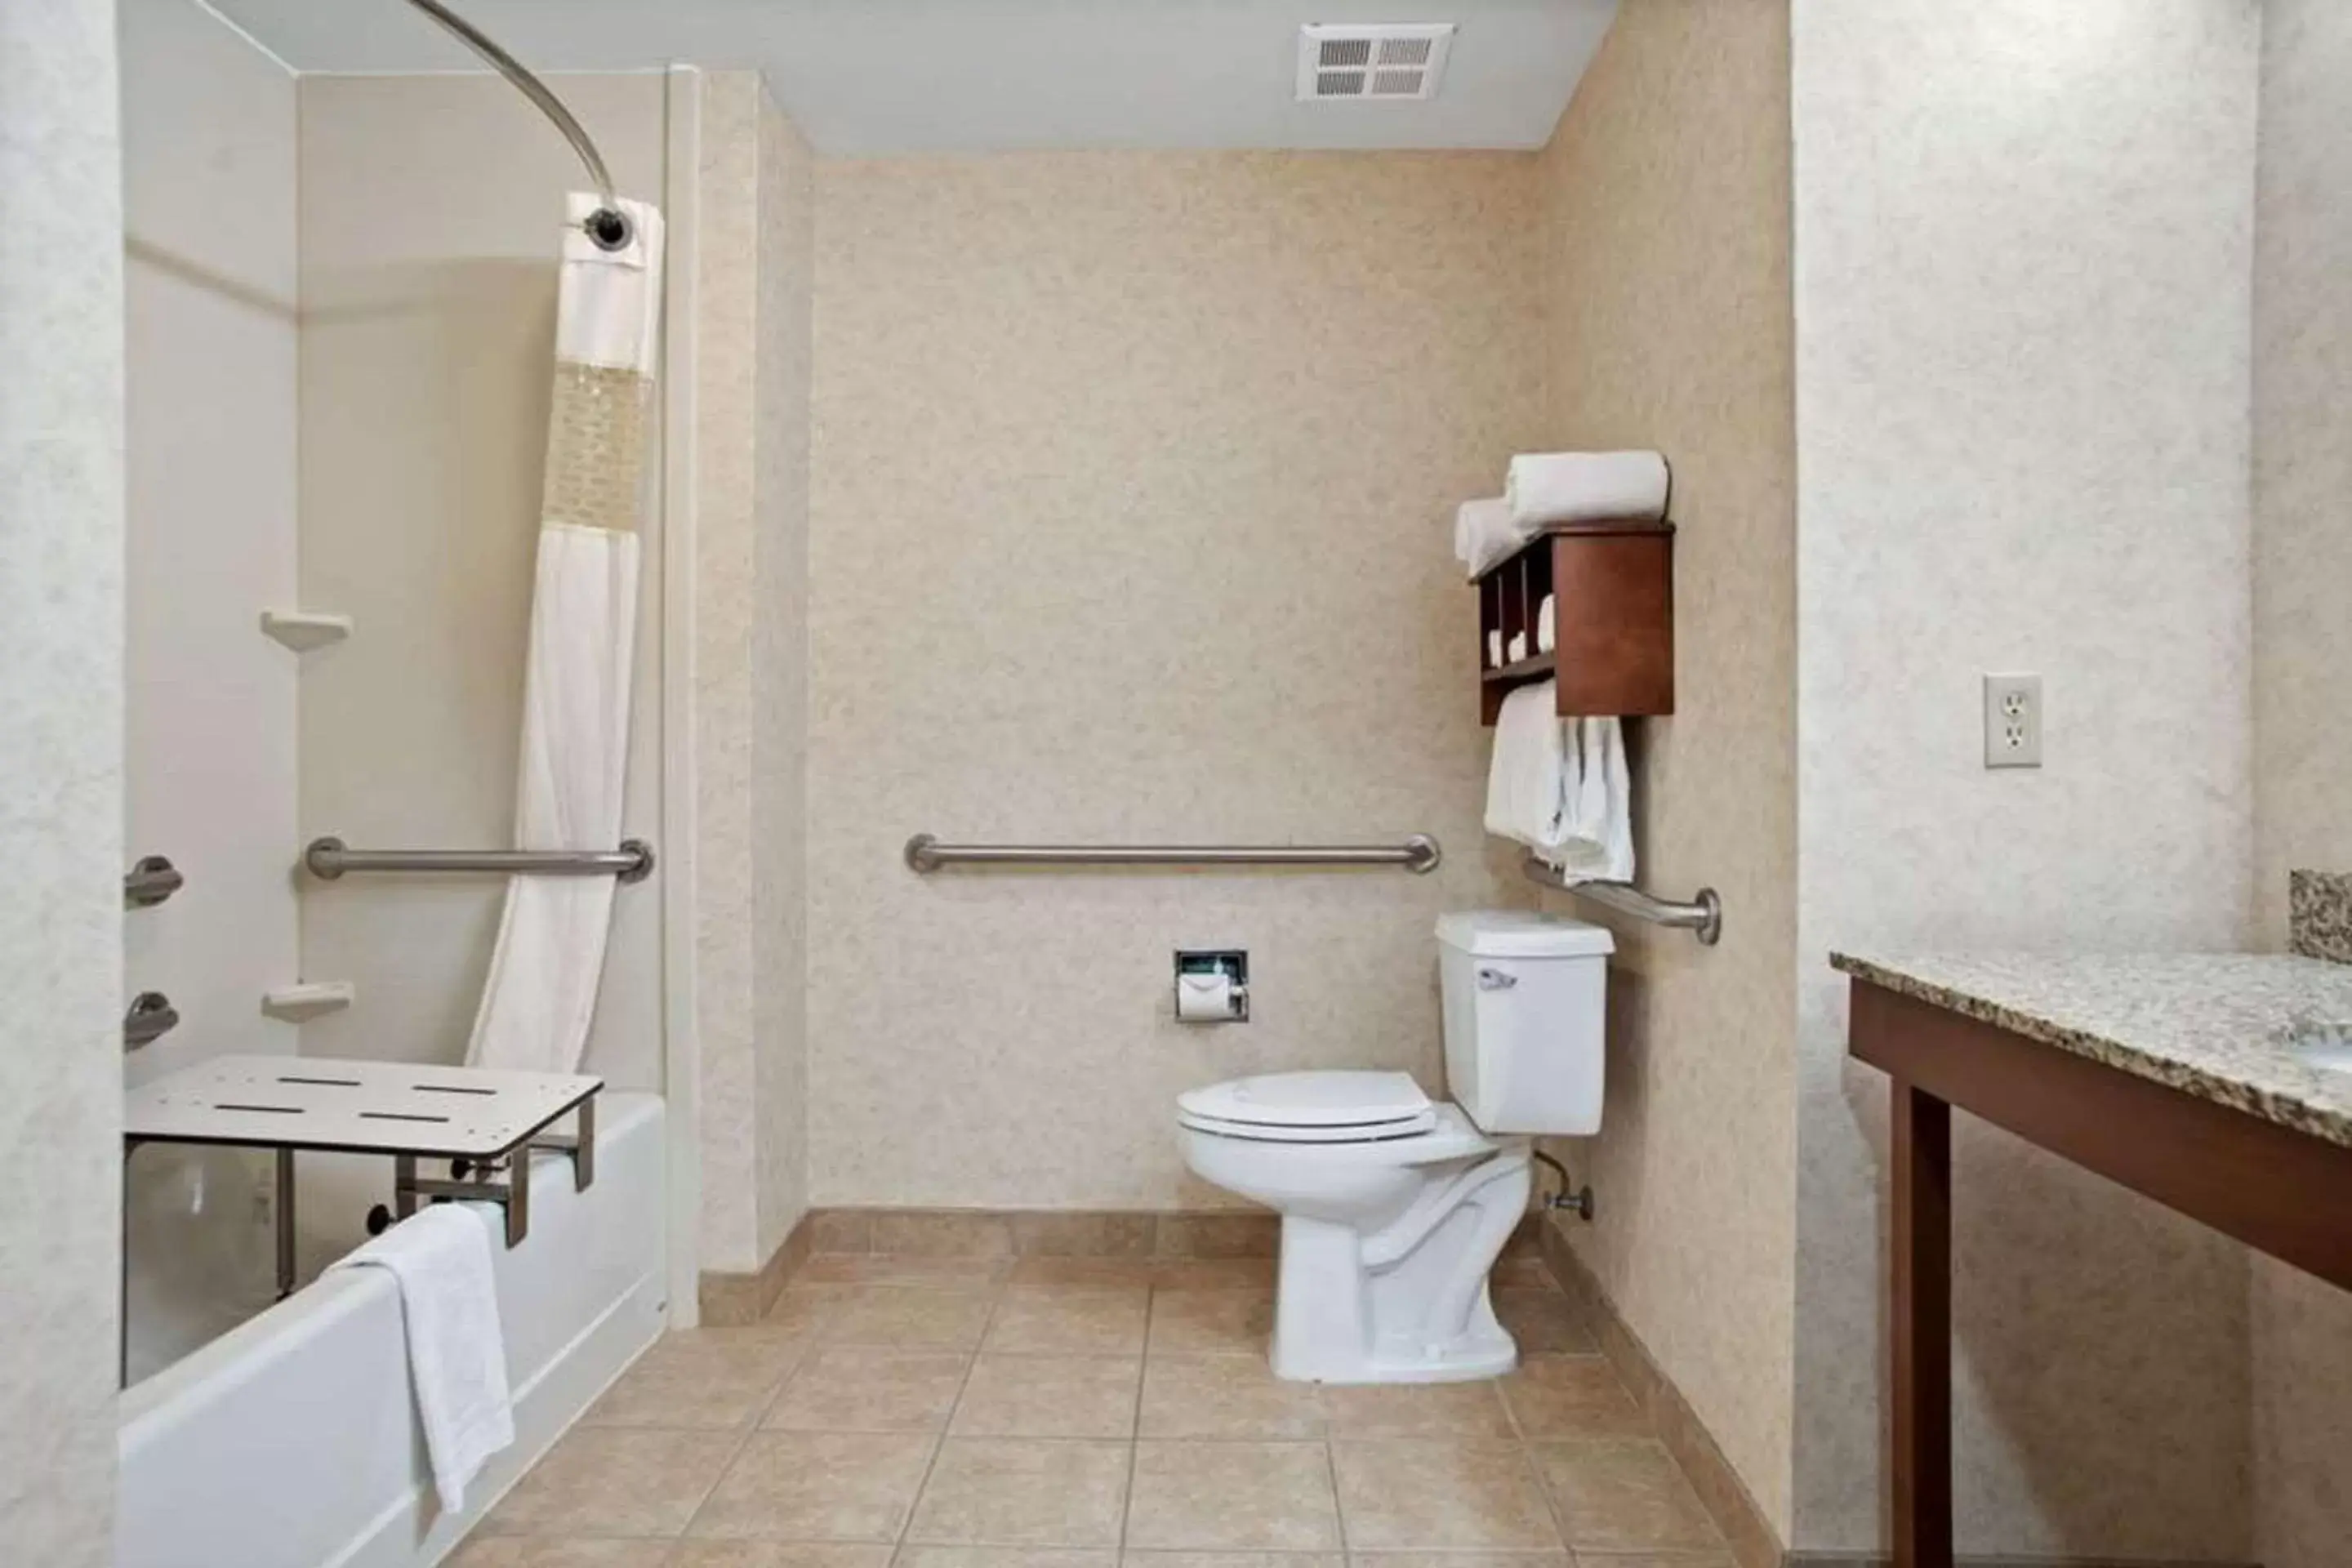 Bathroom in Comfort Inn & Suites Rapid City near Mt Rushmore